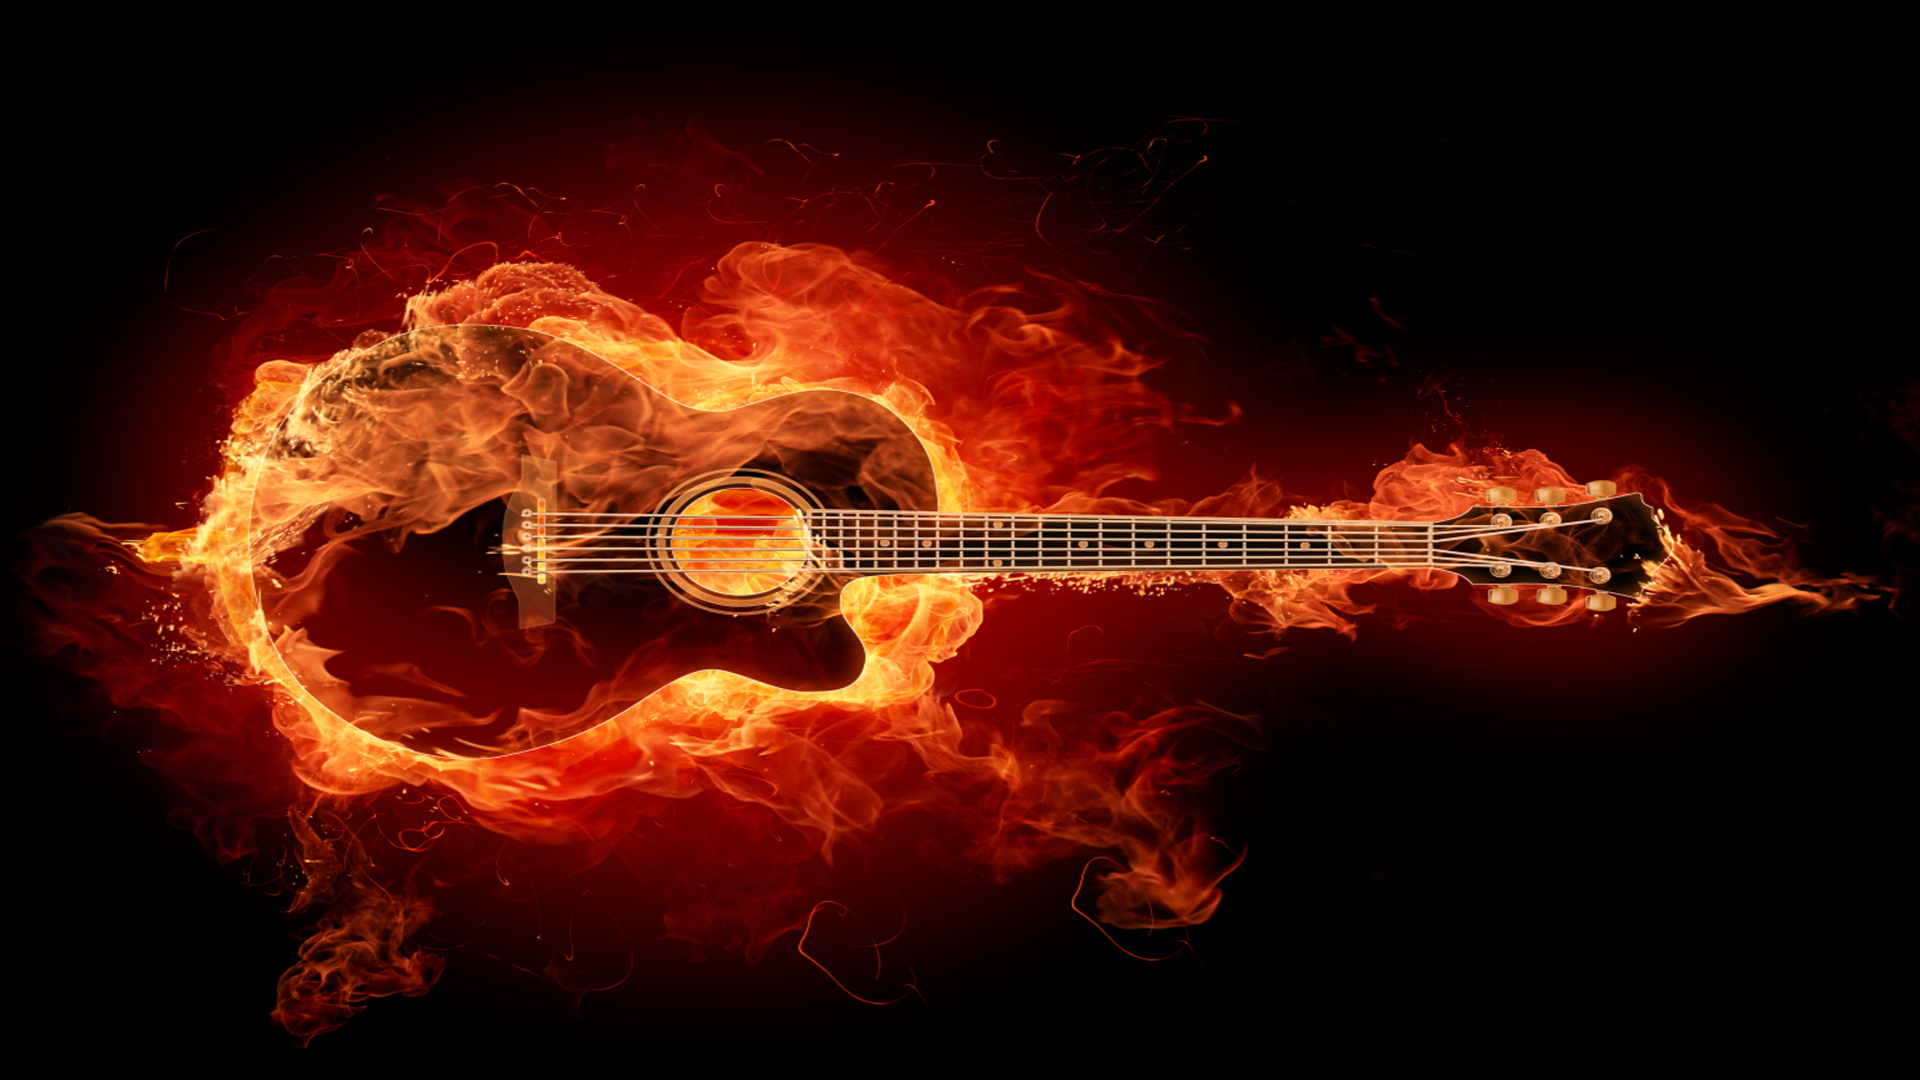 flames wallpaper guitar wallpapers ps3 1920x1080 1920x1080